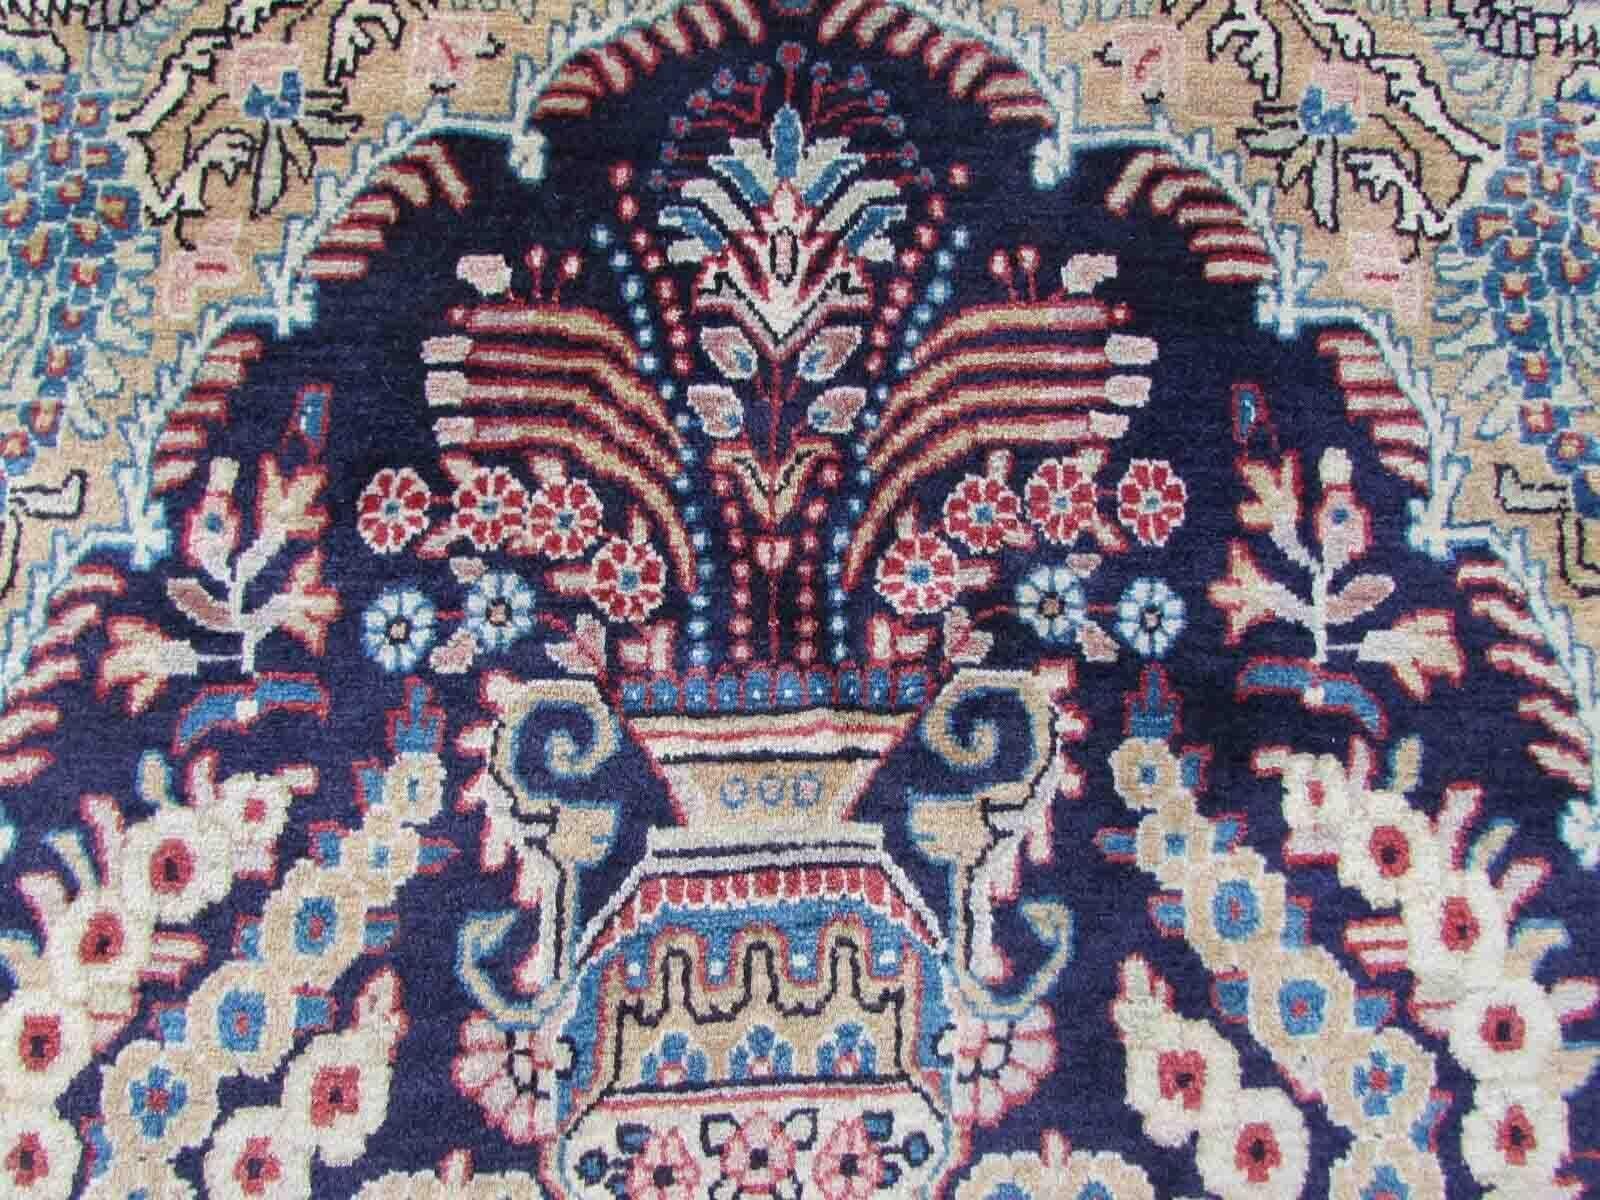 Handgefertigter Vintage-Kashan-Teppich mit Gebetsmotiv, Vögeln und Blumen. Der Teppich stammt aus dem Ende des 20. Jahrhunderts und ist in gutem Originalzustand.

-Zustand: original gut, 

-Umgebung: 1970er Jahre,

-Größe: 4' x 6.8' (124cm x